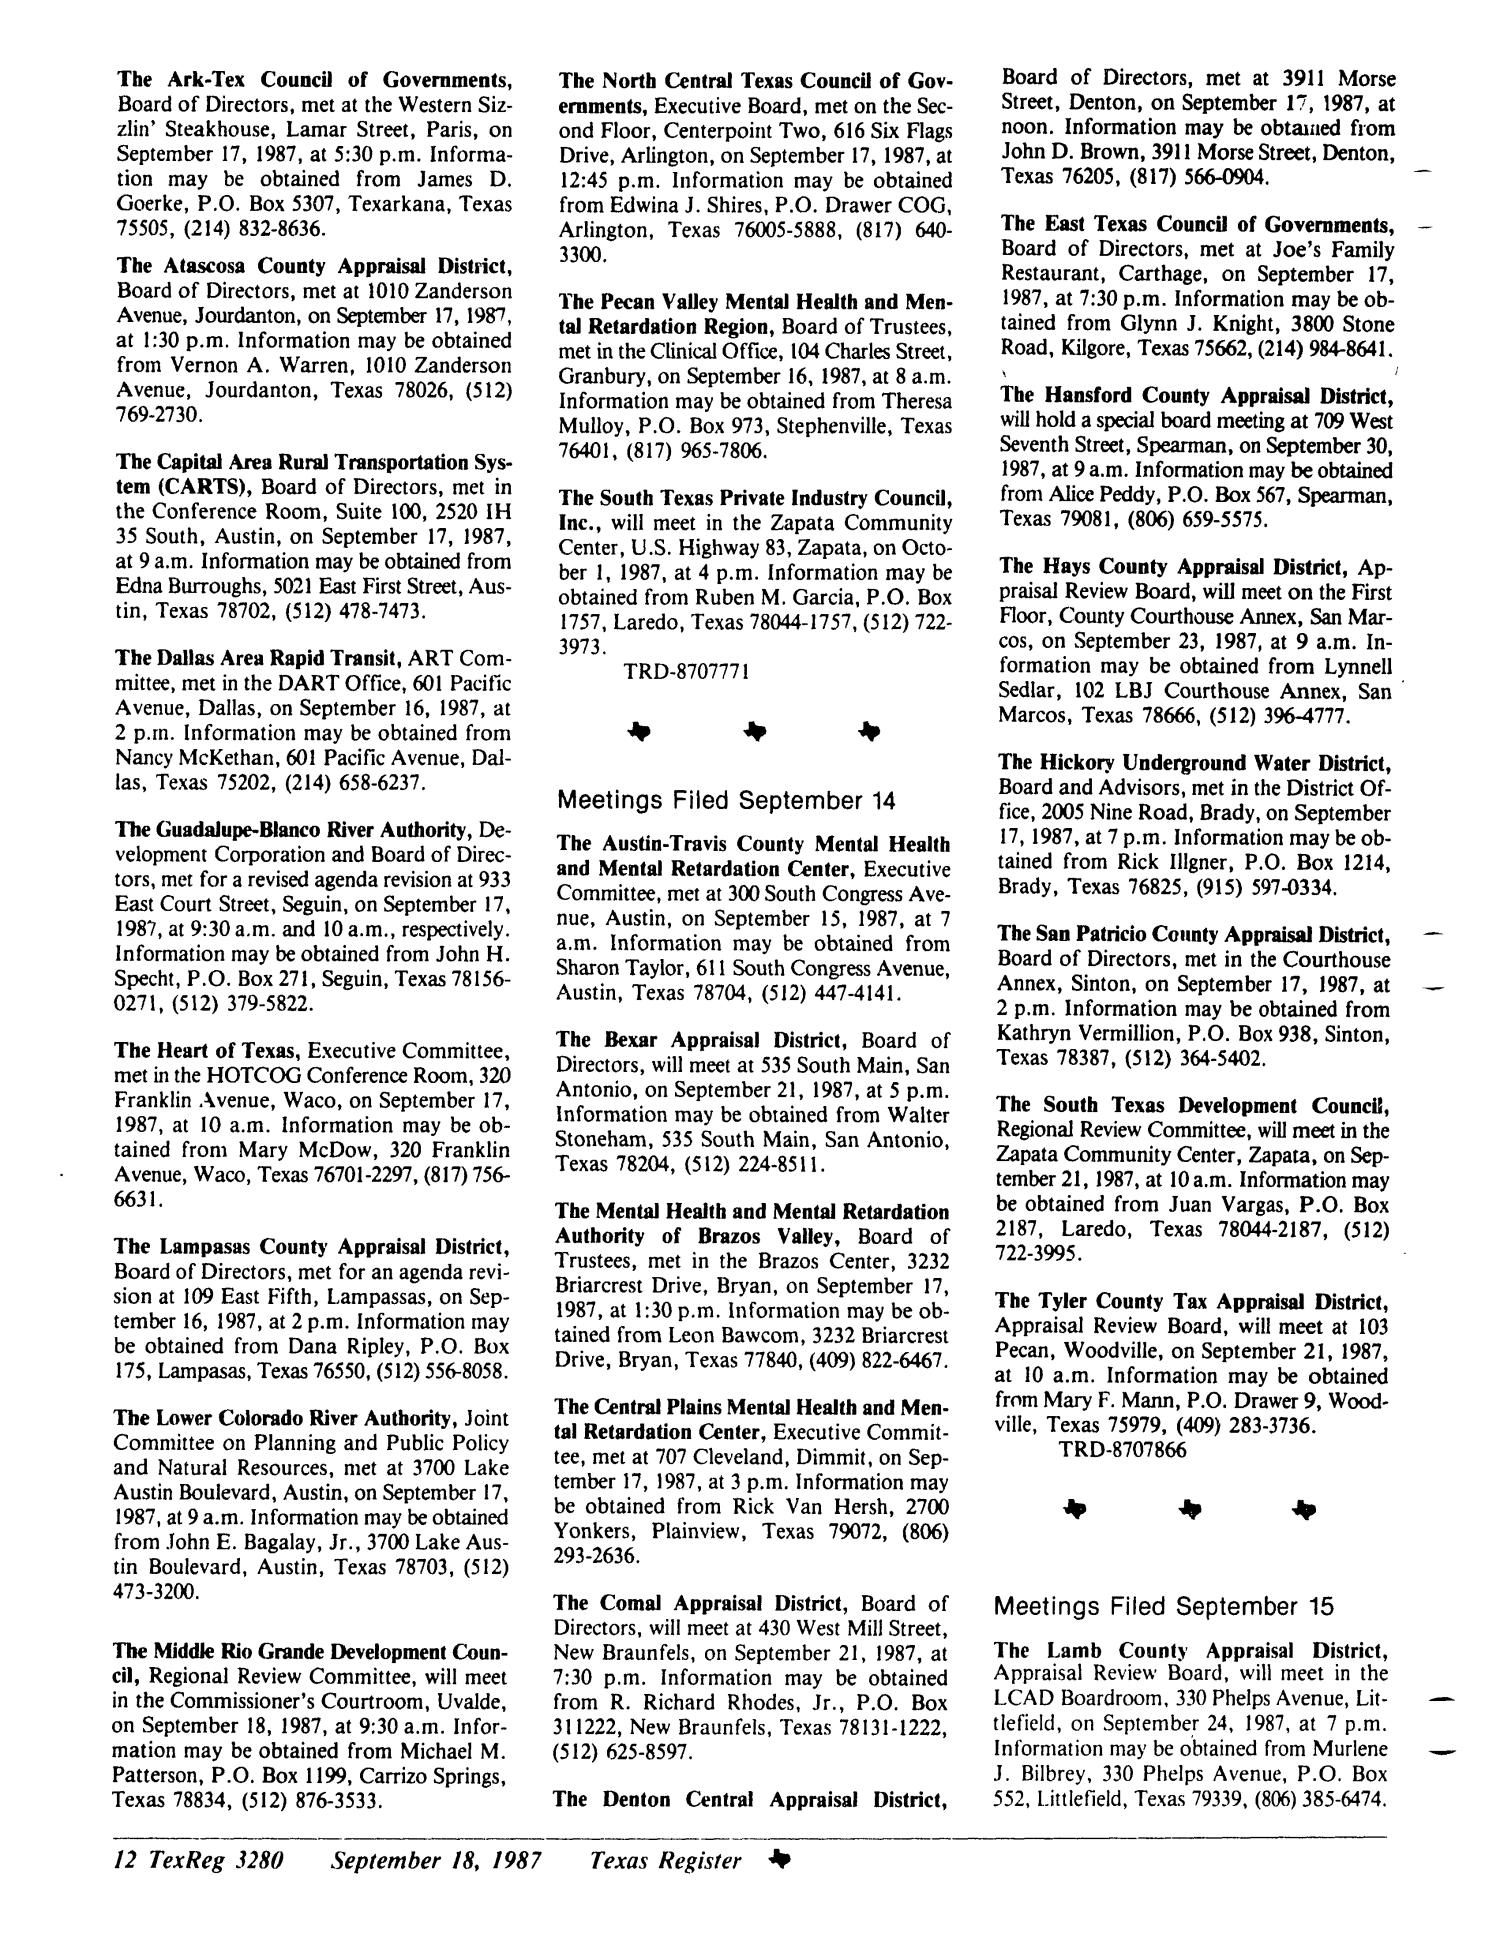 Texas Register, Volume 12, Number 70, Pages 3237-3293, September 18, 1987
                                                
                                                    3280
                                                